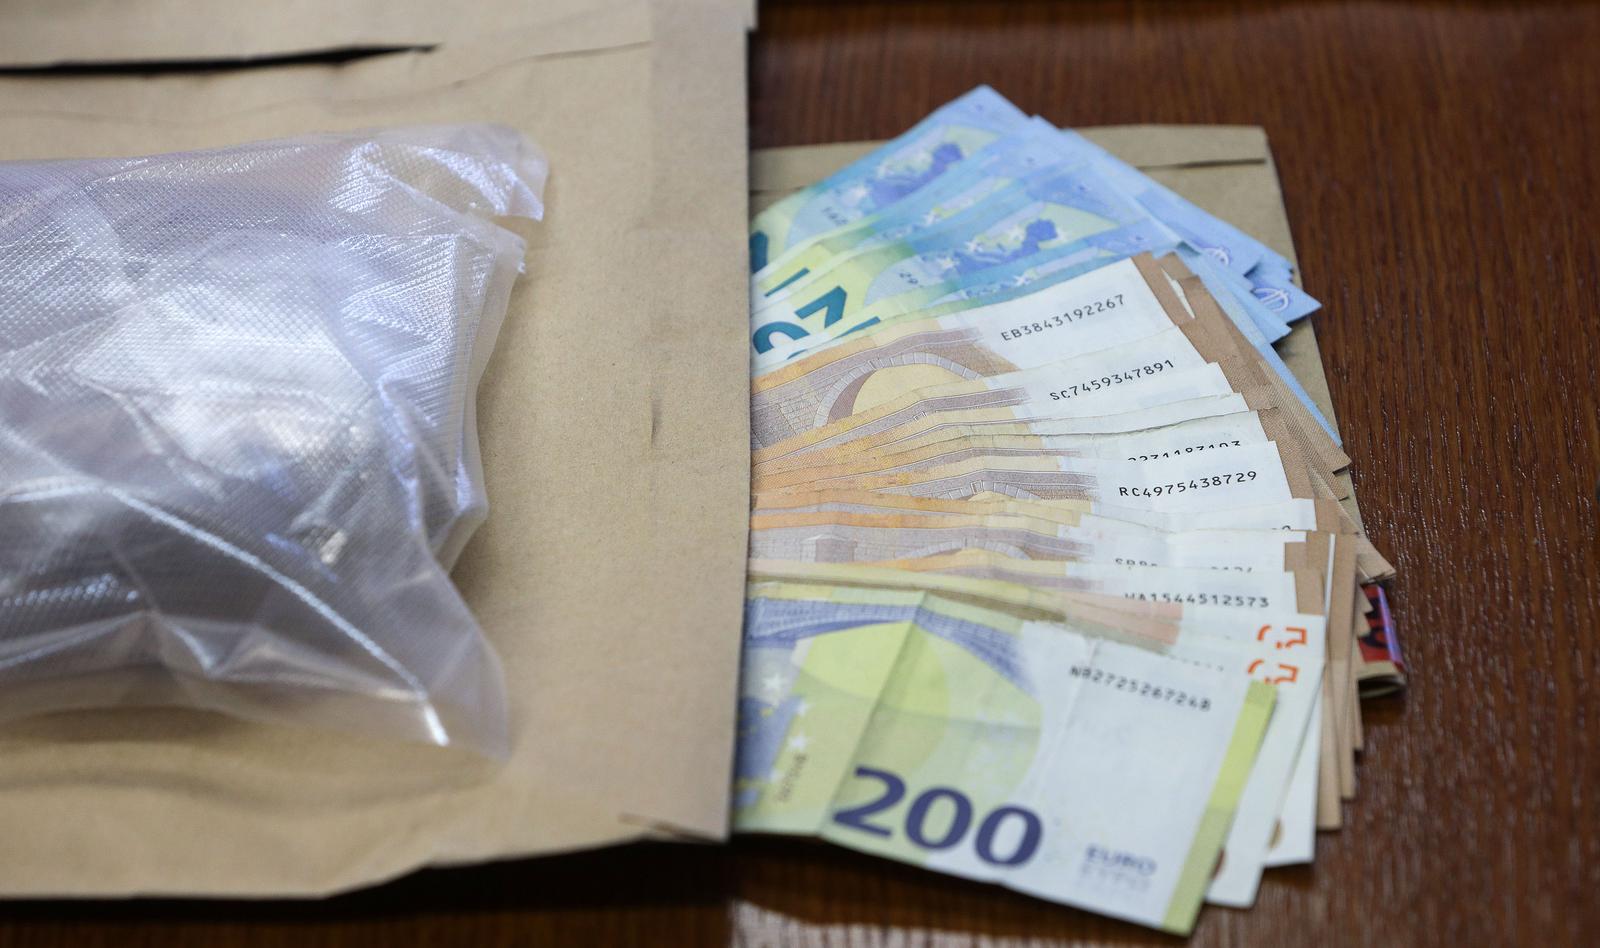 09.06.2023., Zadar - Policijska uprava Zadarska odrzala je konferenciju o zapljeni heroina, kokaina i amfetamina.  Photo: Sime Zelic/PIXSELL